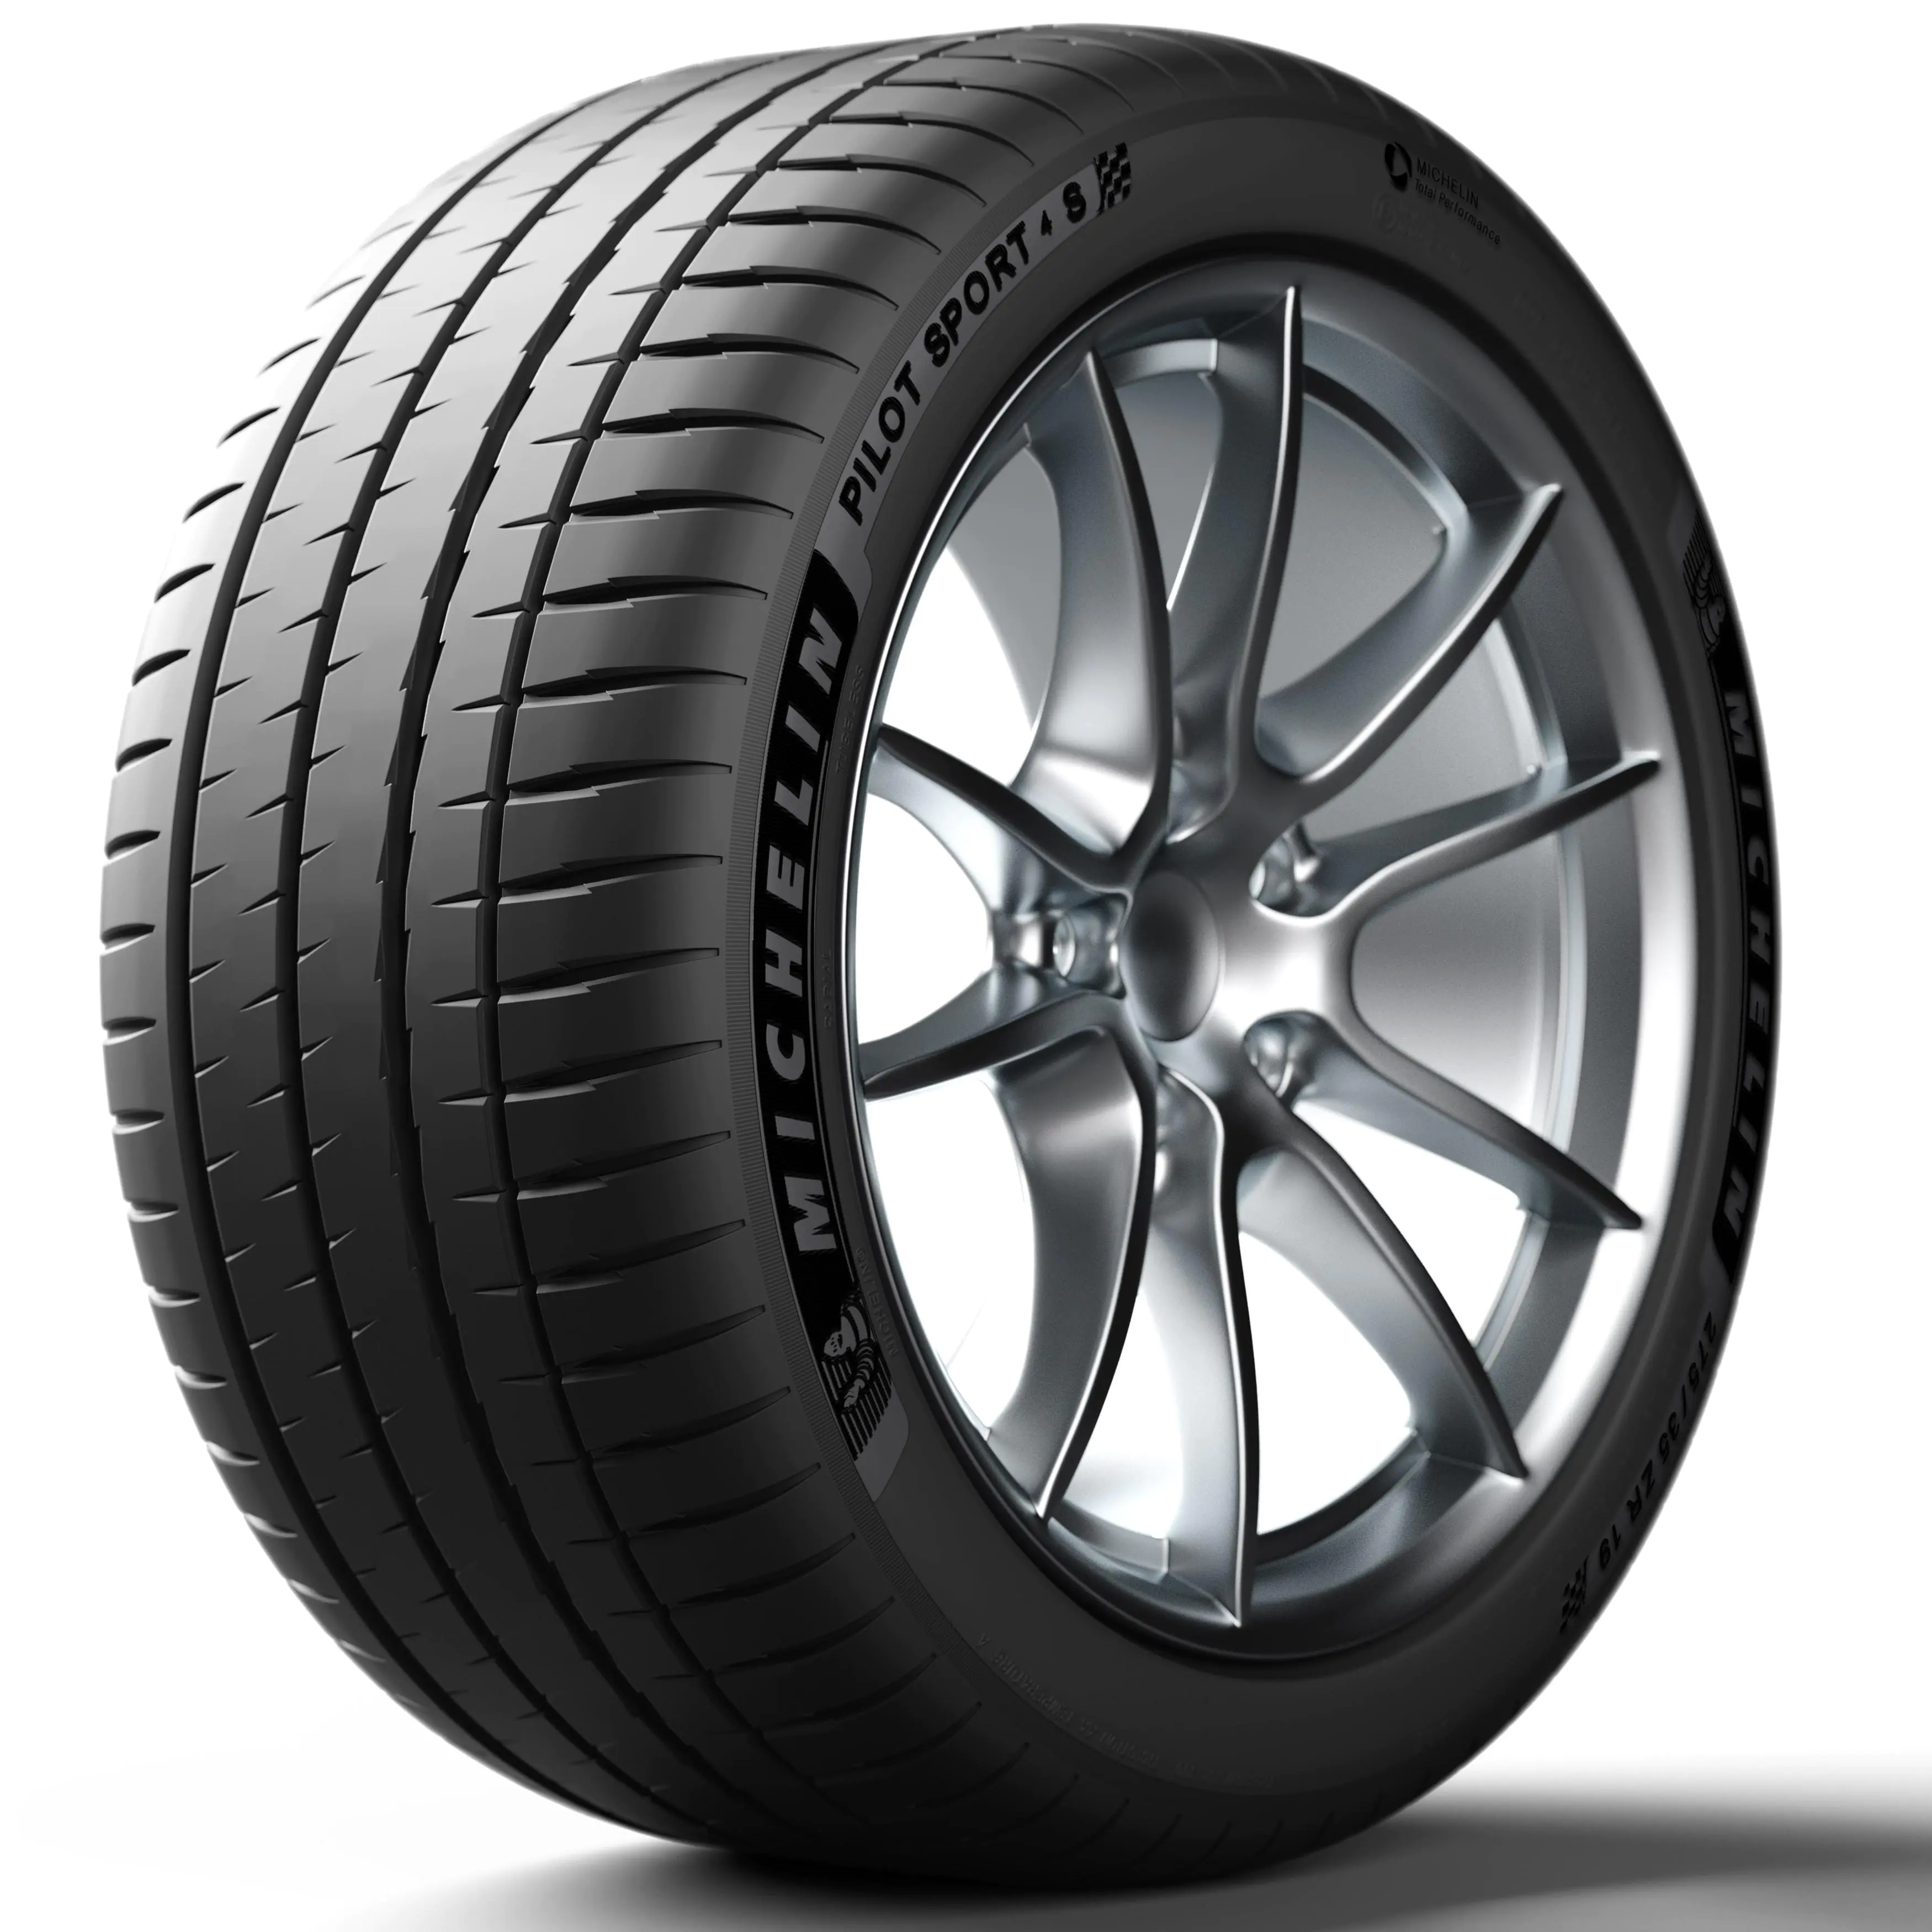 Michelin Michelin 225/35 R19 88Y P.SPORT 4 S XL pneumatici nuovi Estivo 